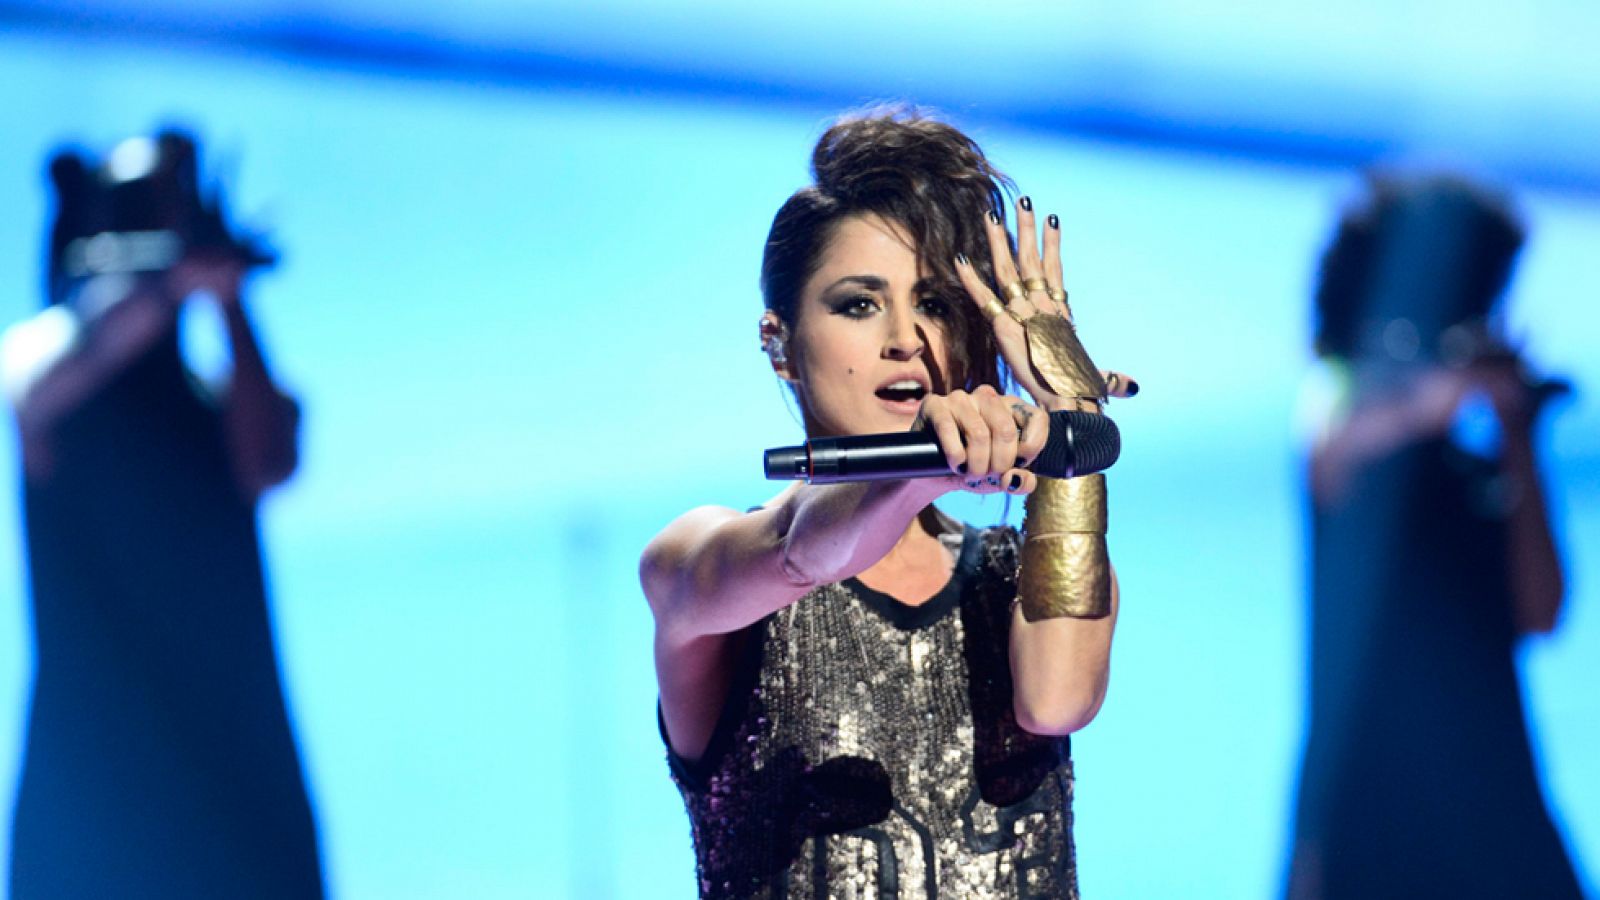 Eurovisin 2016 - Espaa: Barei canta 'Say yay!'